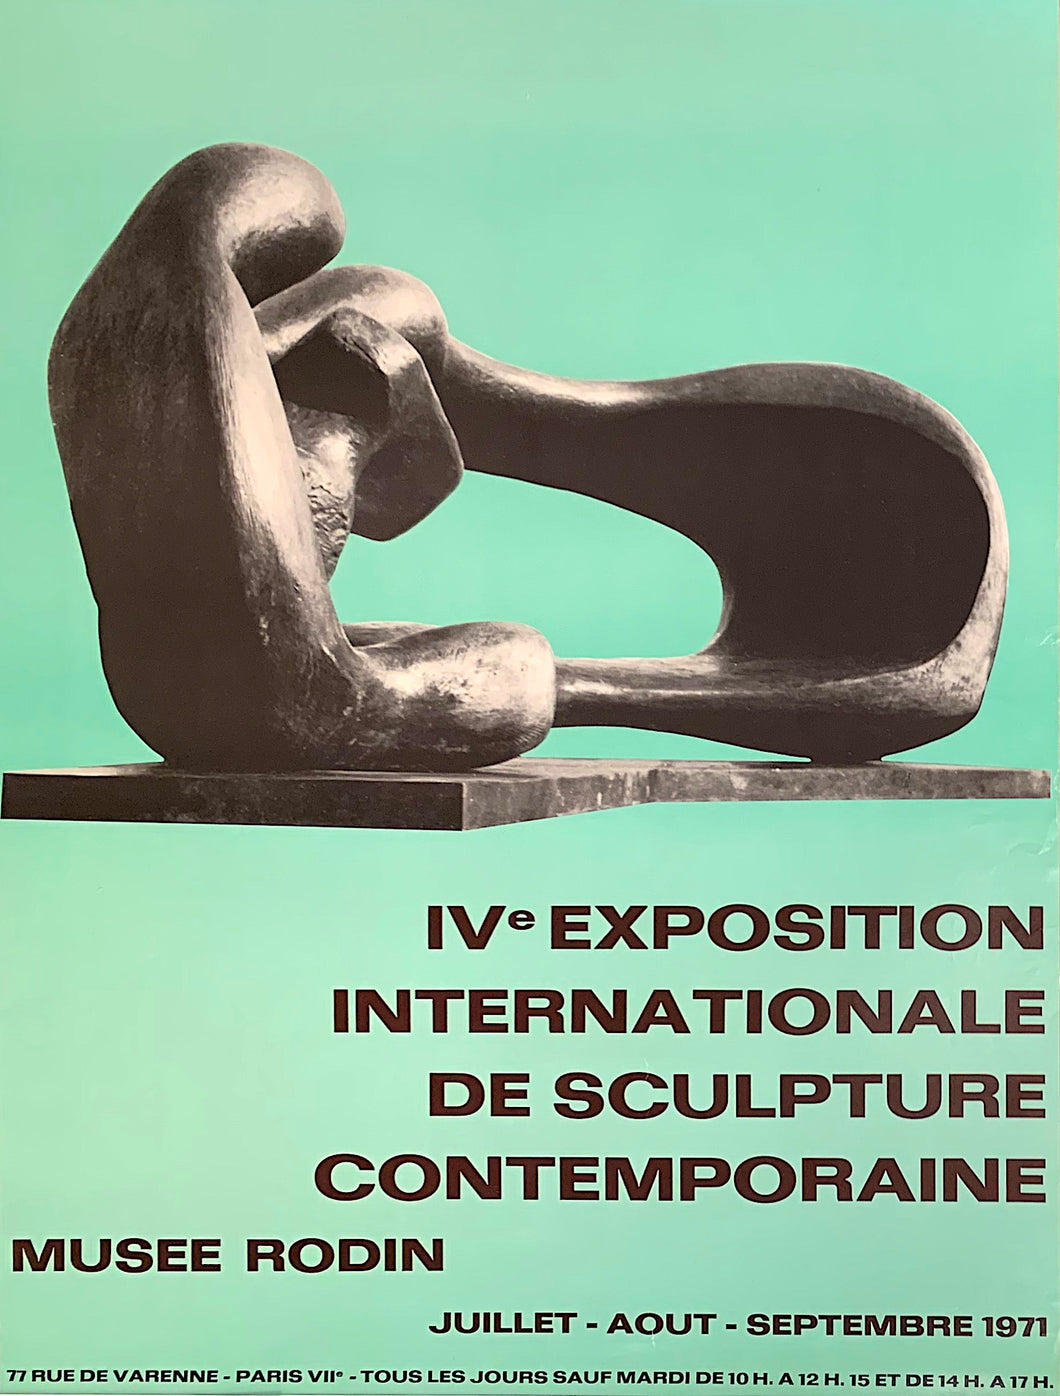 'IVe Exposition Internationale de Sculpture Contemporaine, Musee Rodin' - vintage exhibition poster